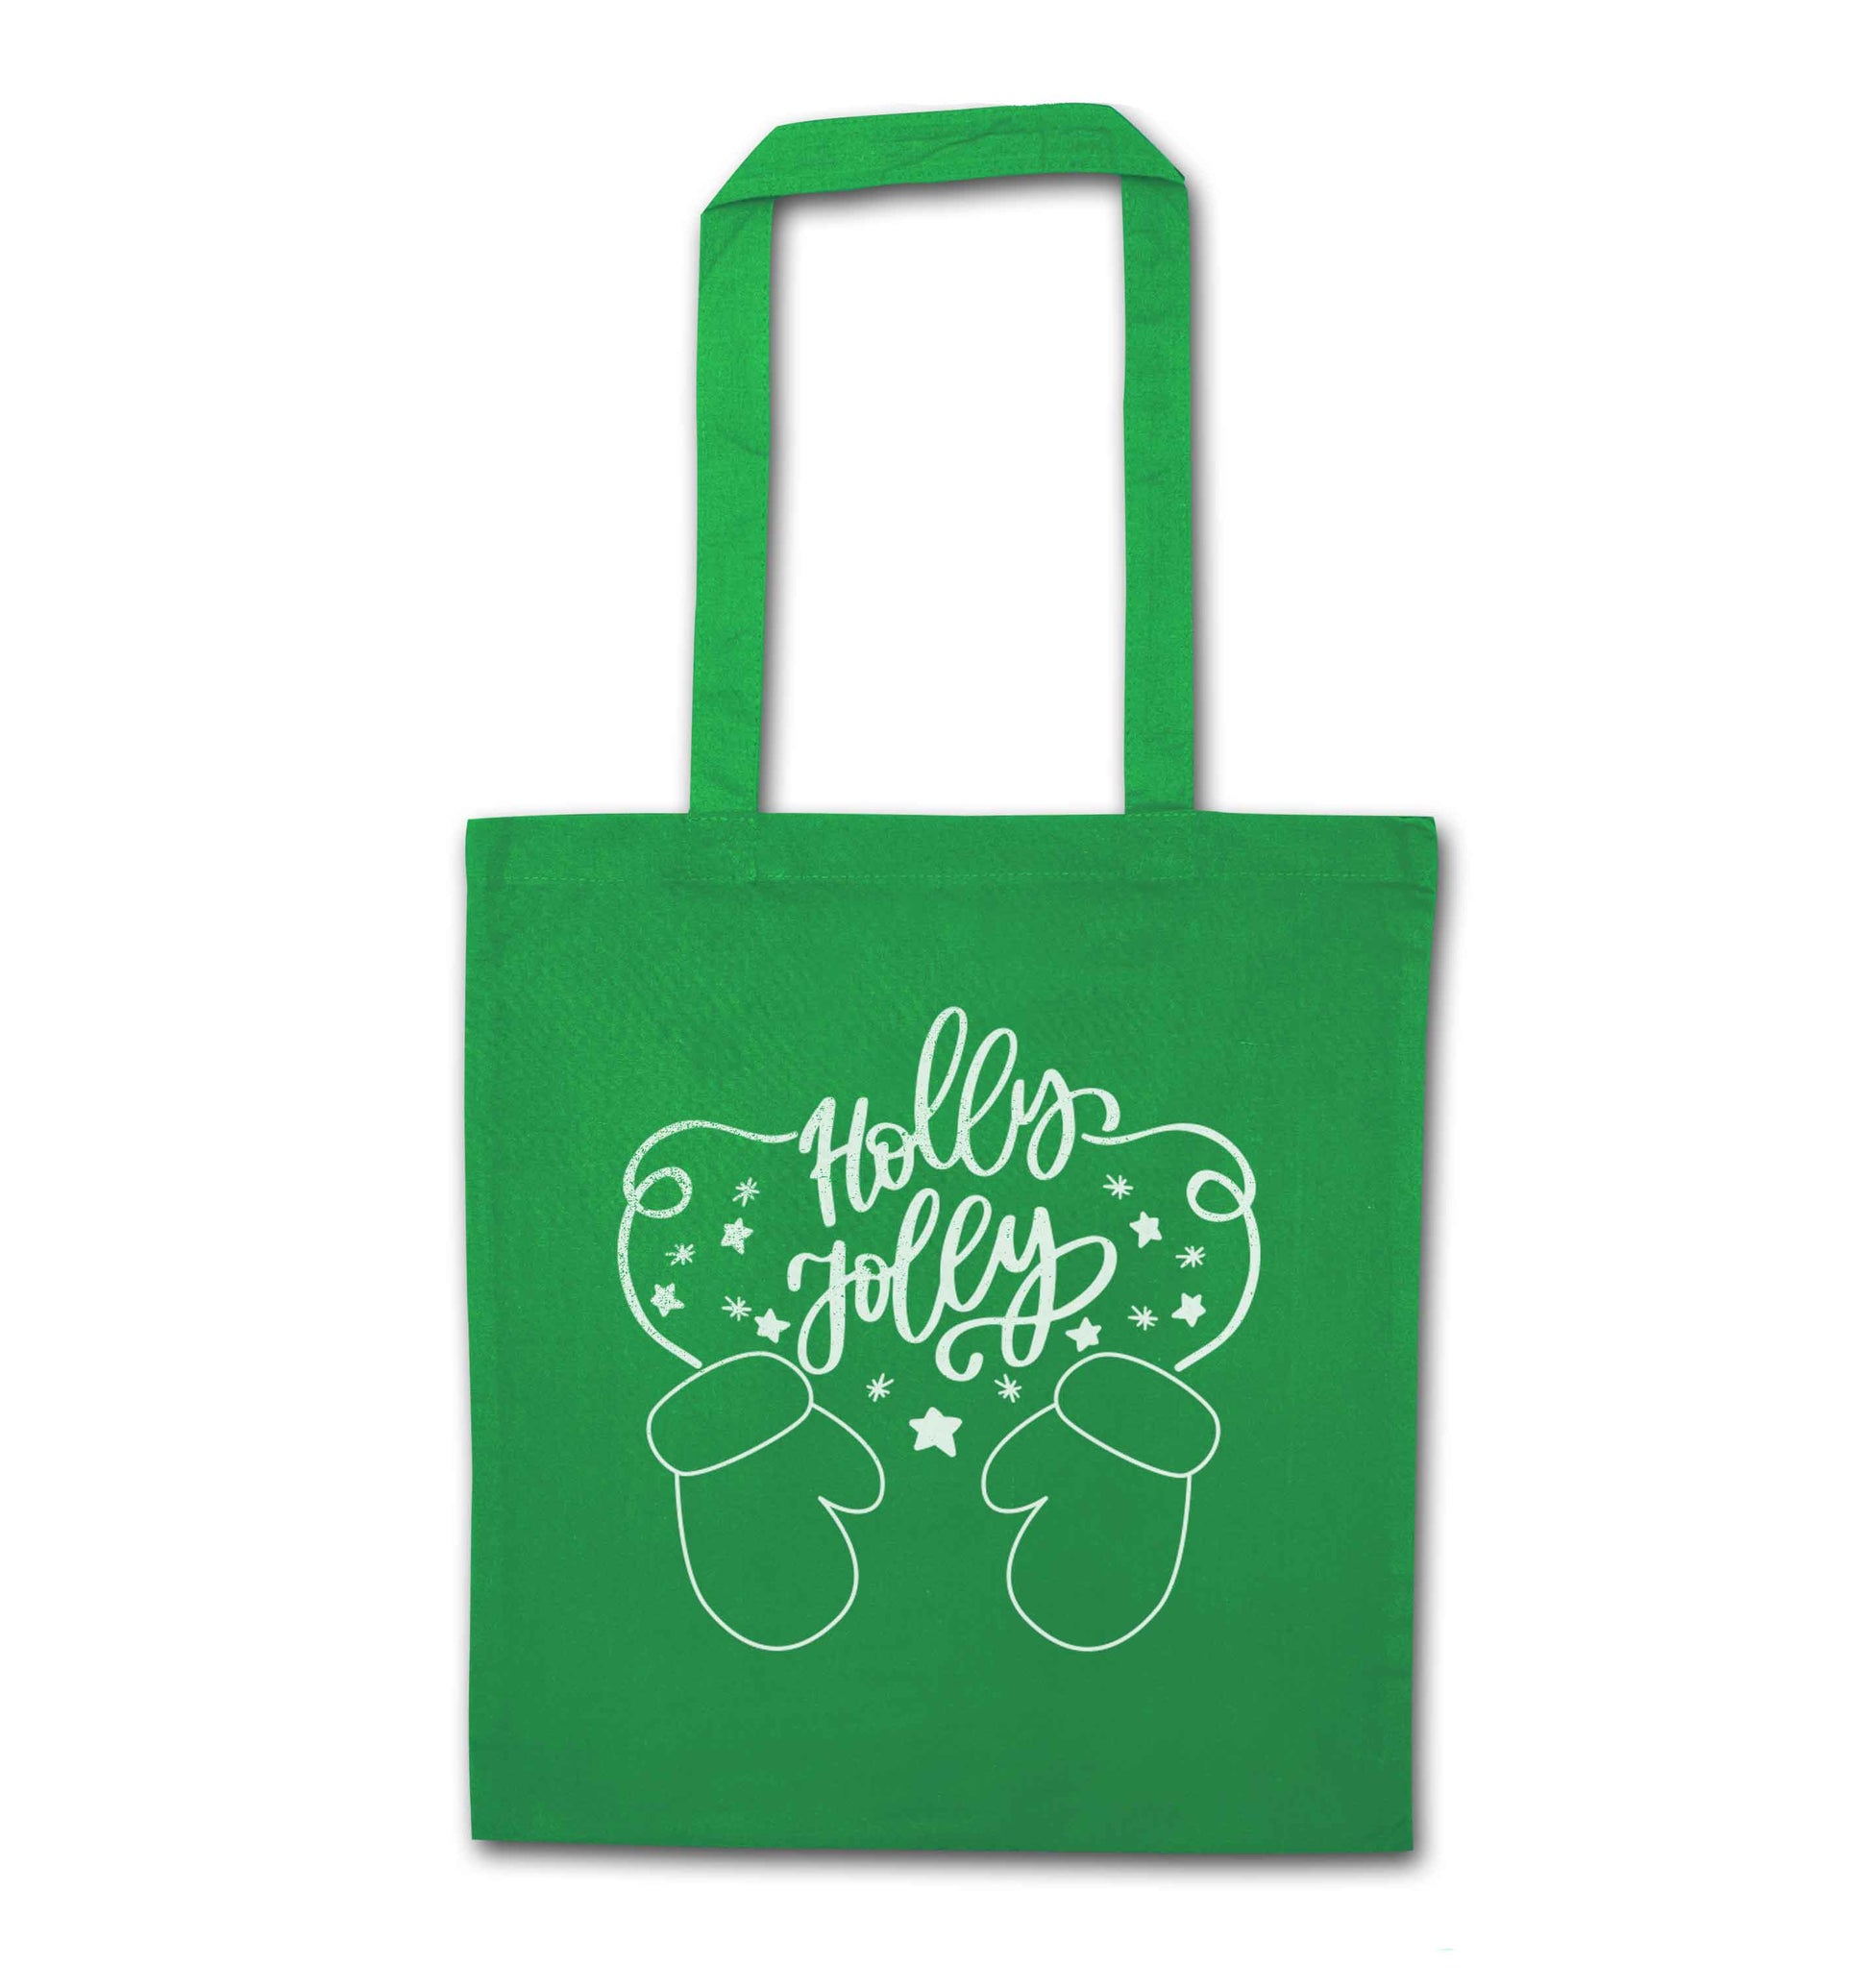 Holly jolly green tote bag